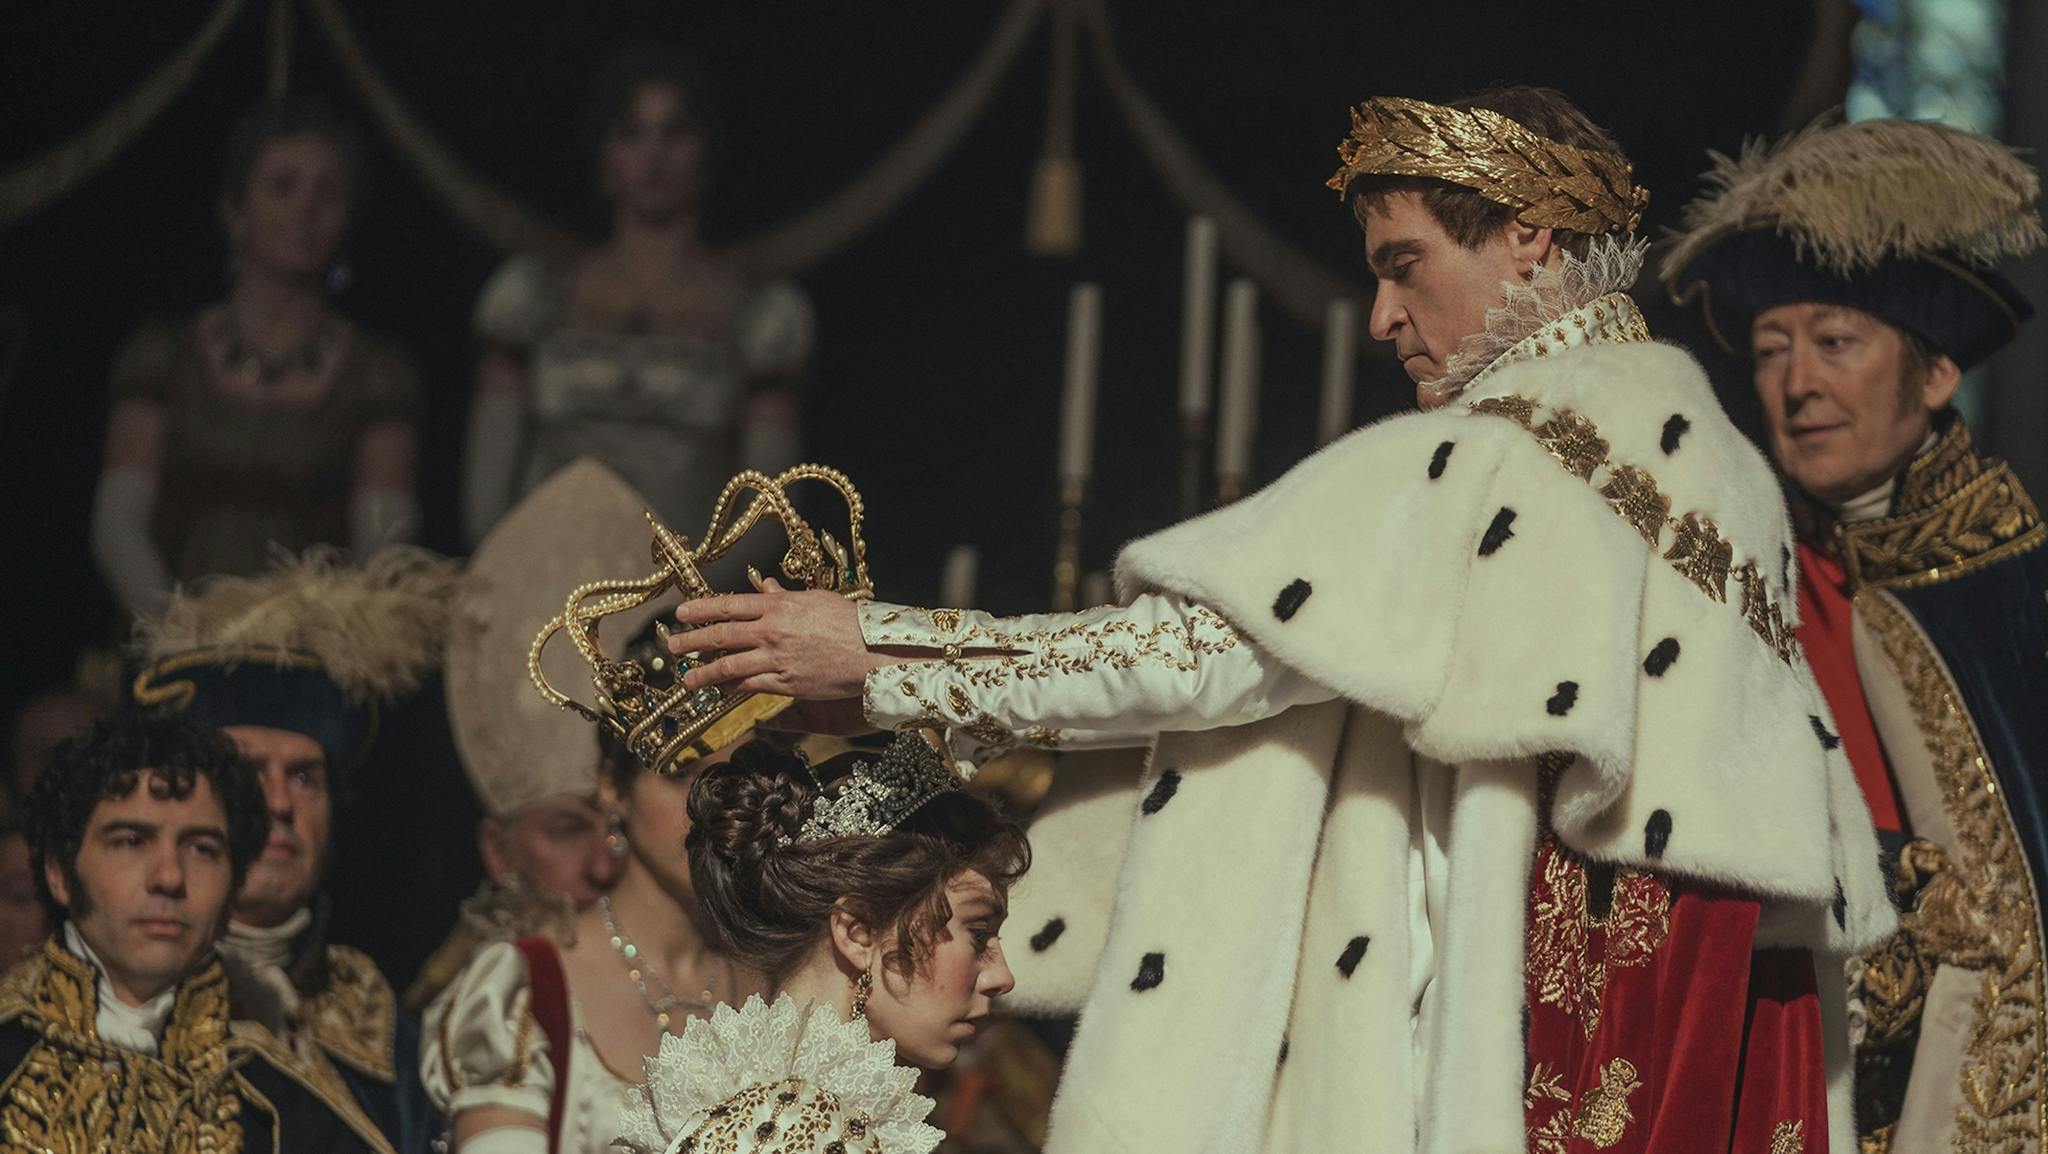 Los trajes de la coronación del ‘Napoleón’ de Scott son sencillamente espectaculares, copias bastante fieles de los del cuadro de David